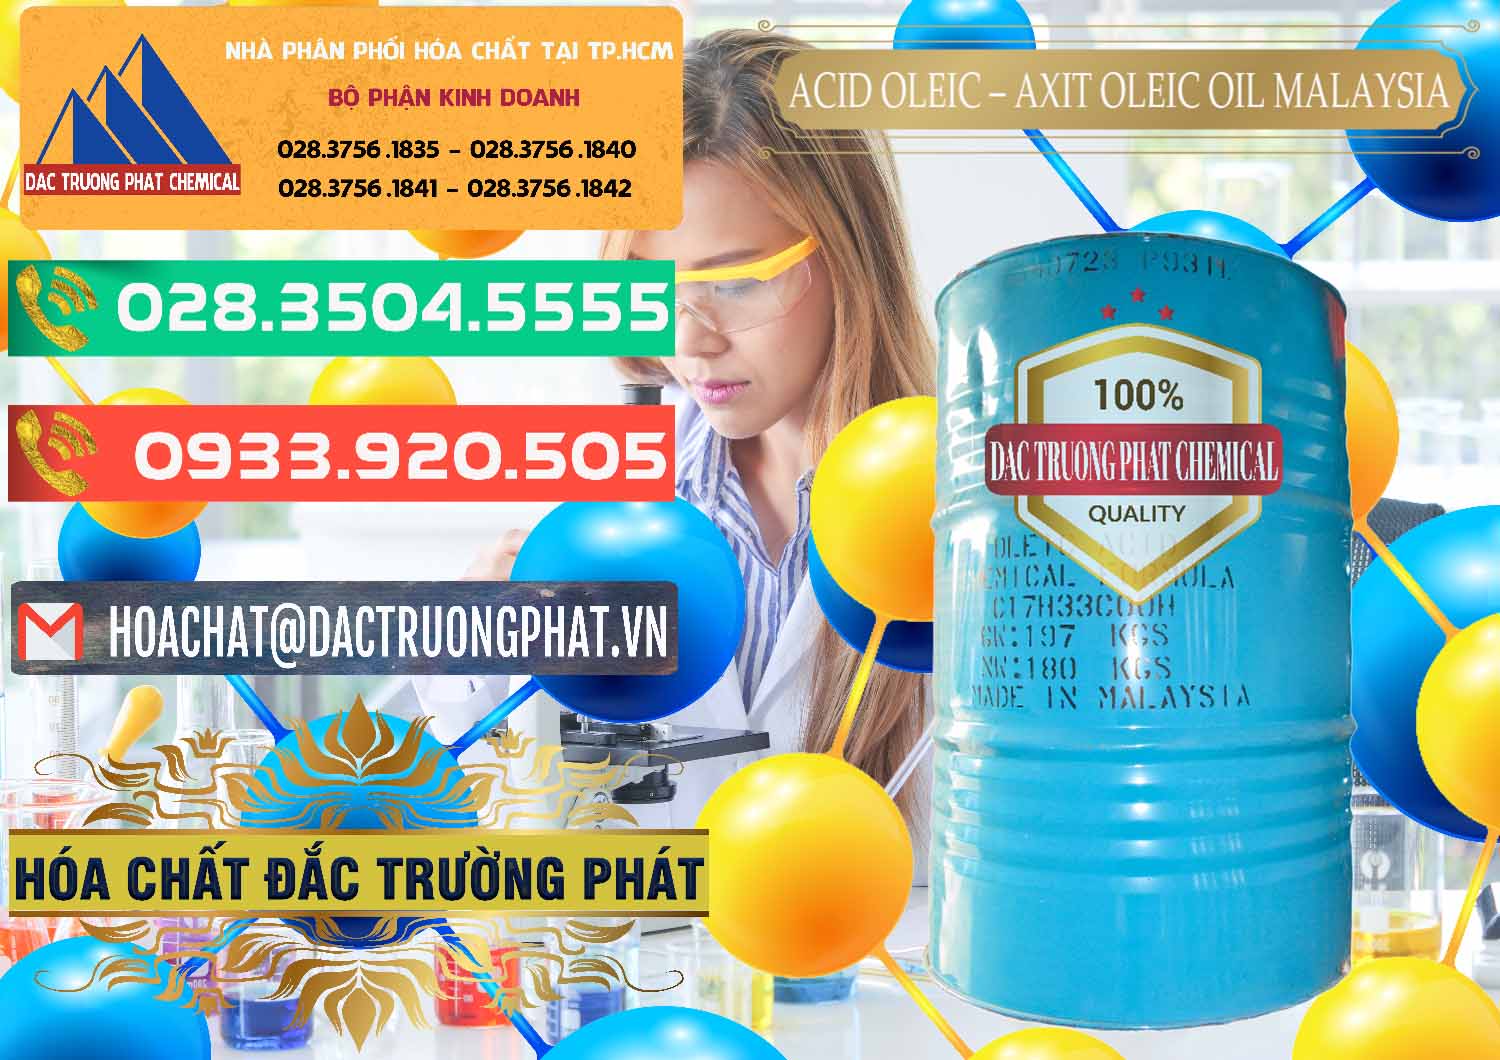 Nơi kinh doanh và bán Acid Oleic – Axit Oleic Oil Malaysia - 0013 - Chuyên bán và phân phối hóa chất tại TP.HCM - congtyhoachat.com.vn